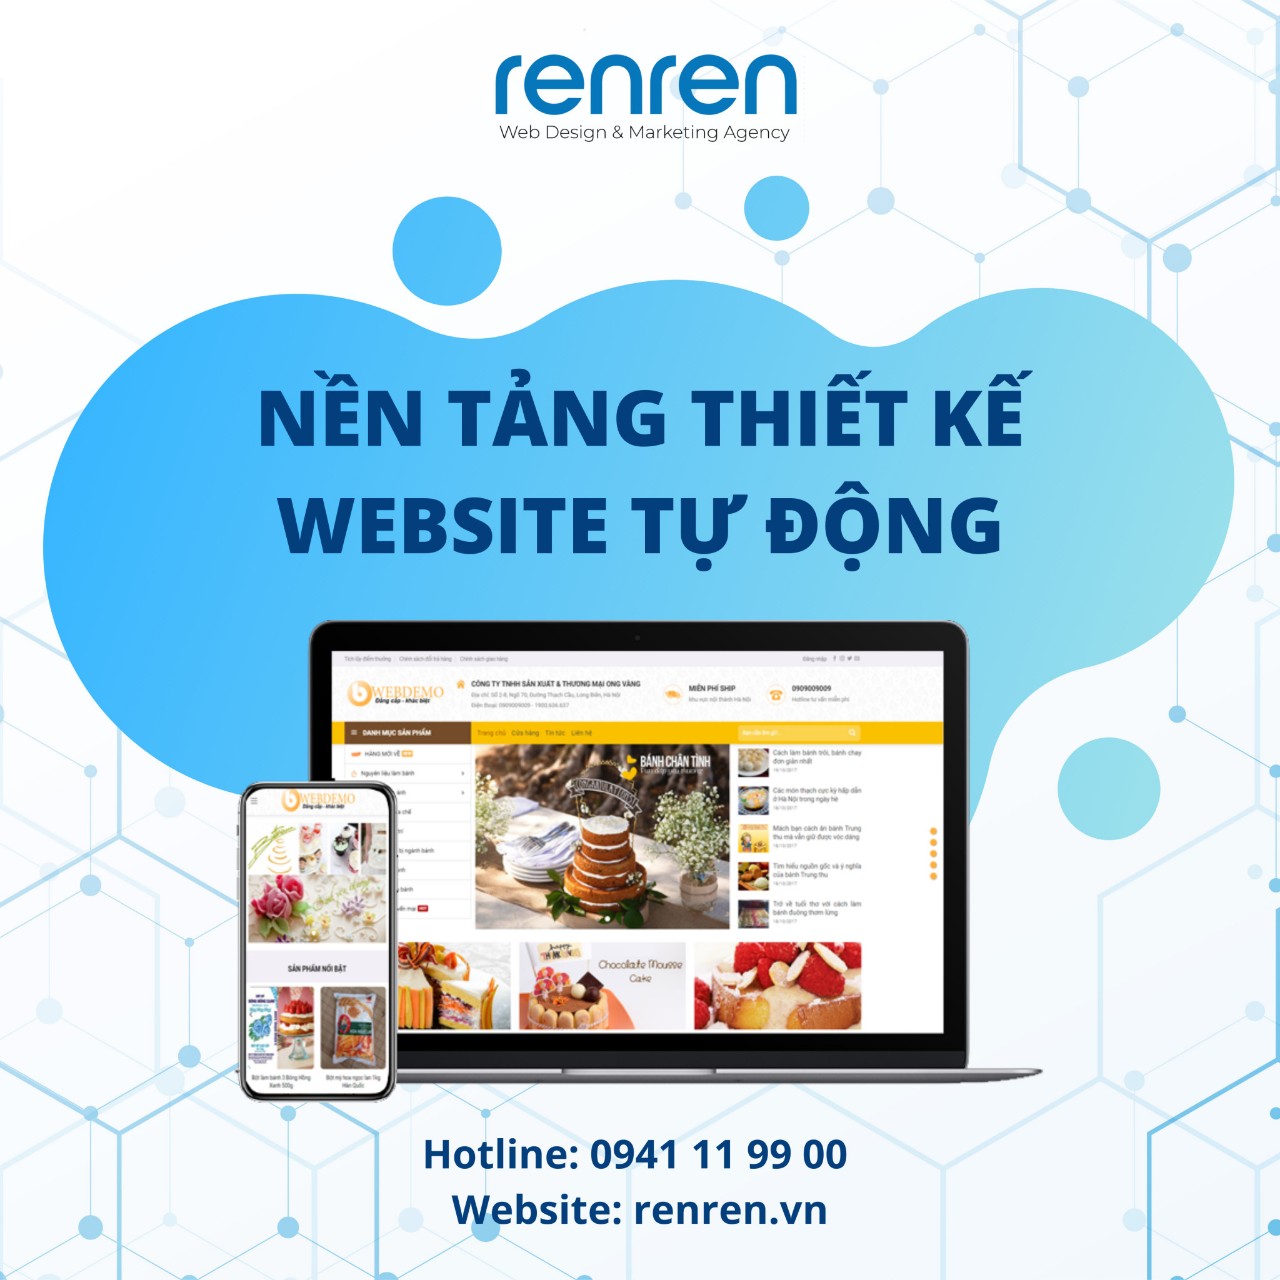 Giá thiết kế website chuyên nghiệp “QUÁ ƯU ĐÃI” tại Renren